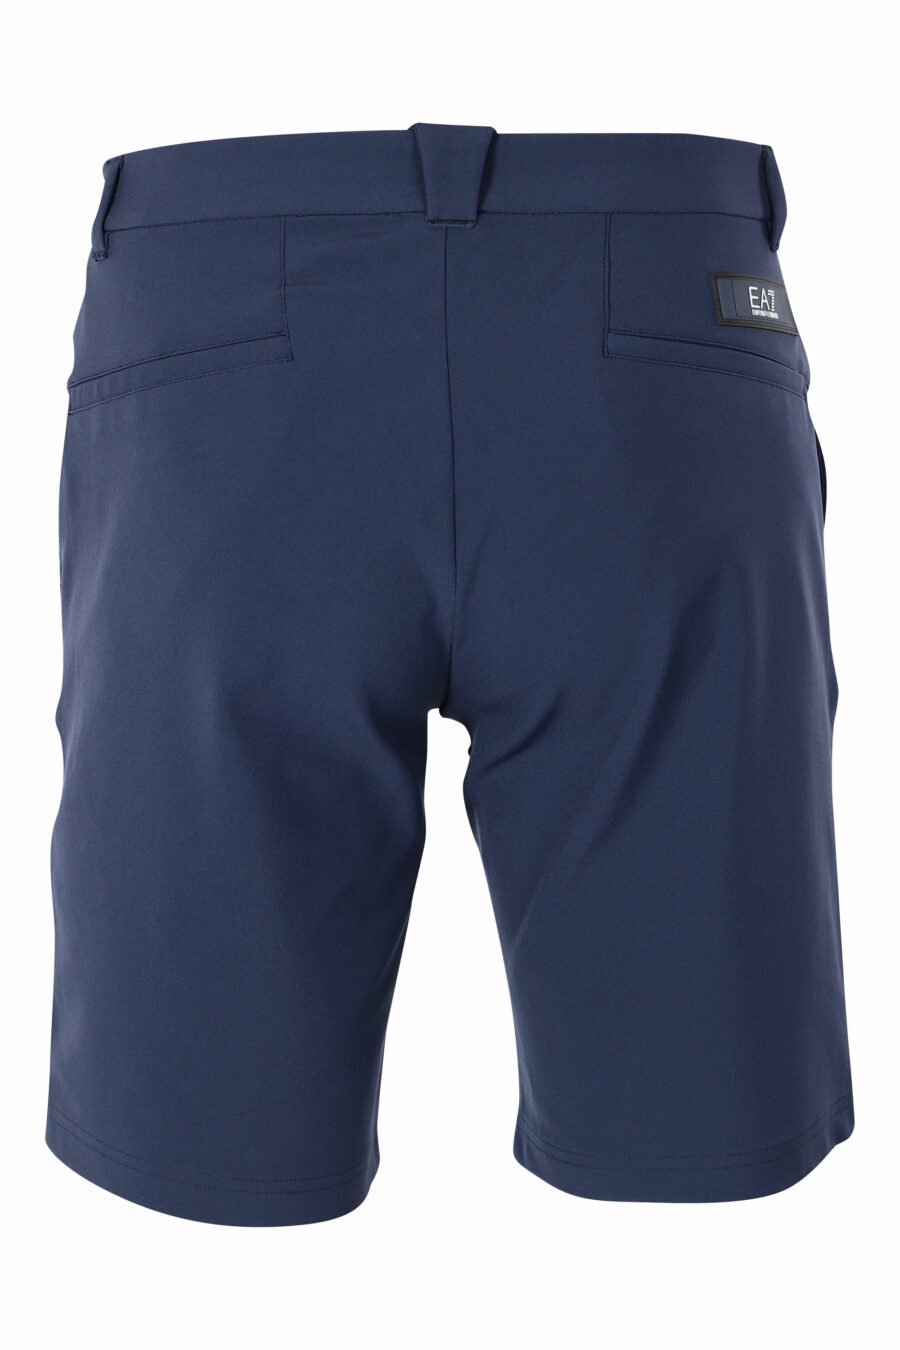 Pantalón azul oscuro corto con minilogo - IMG 9572